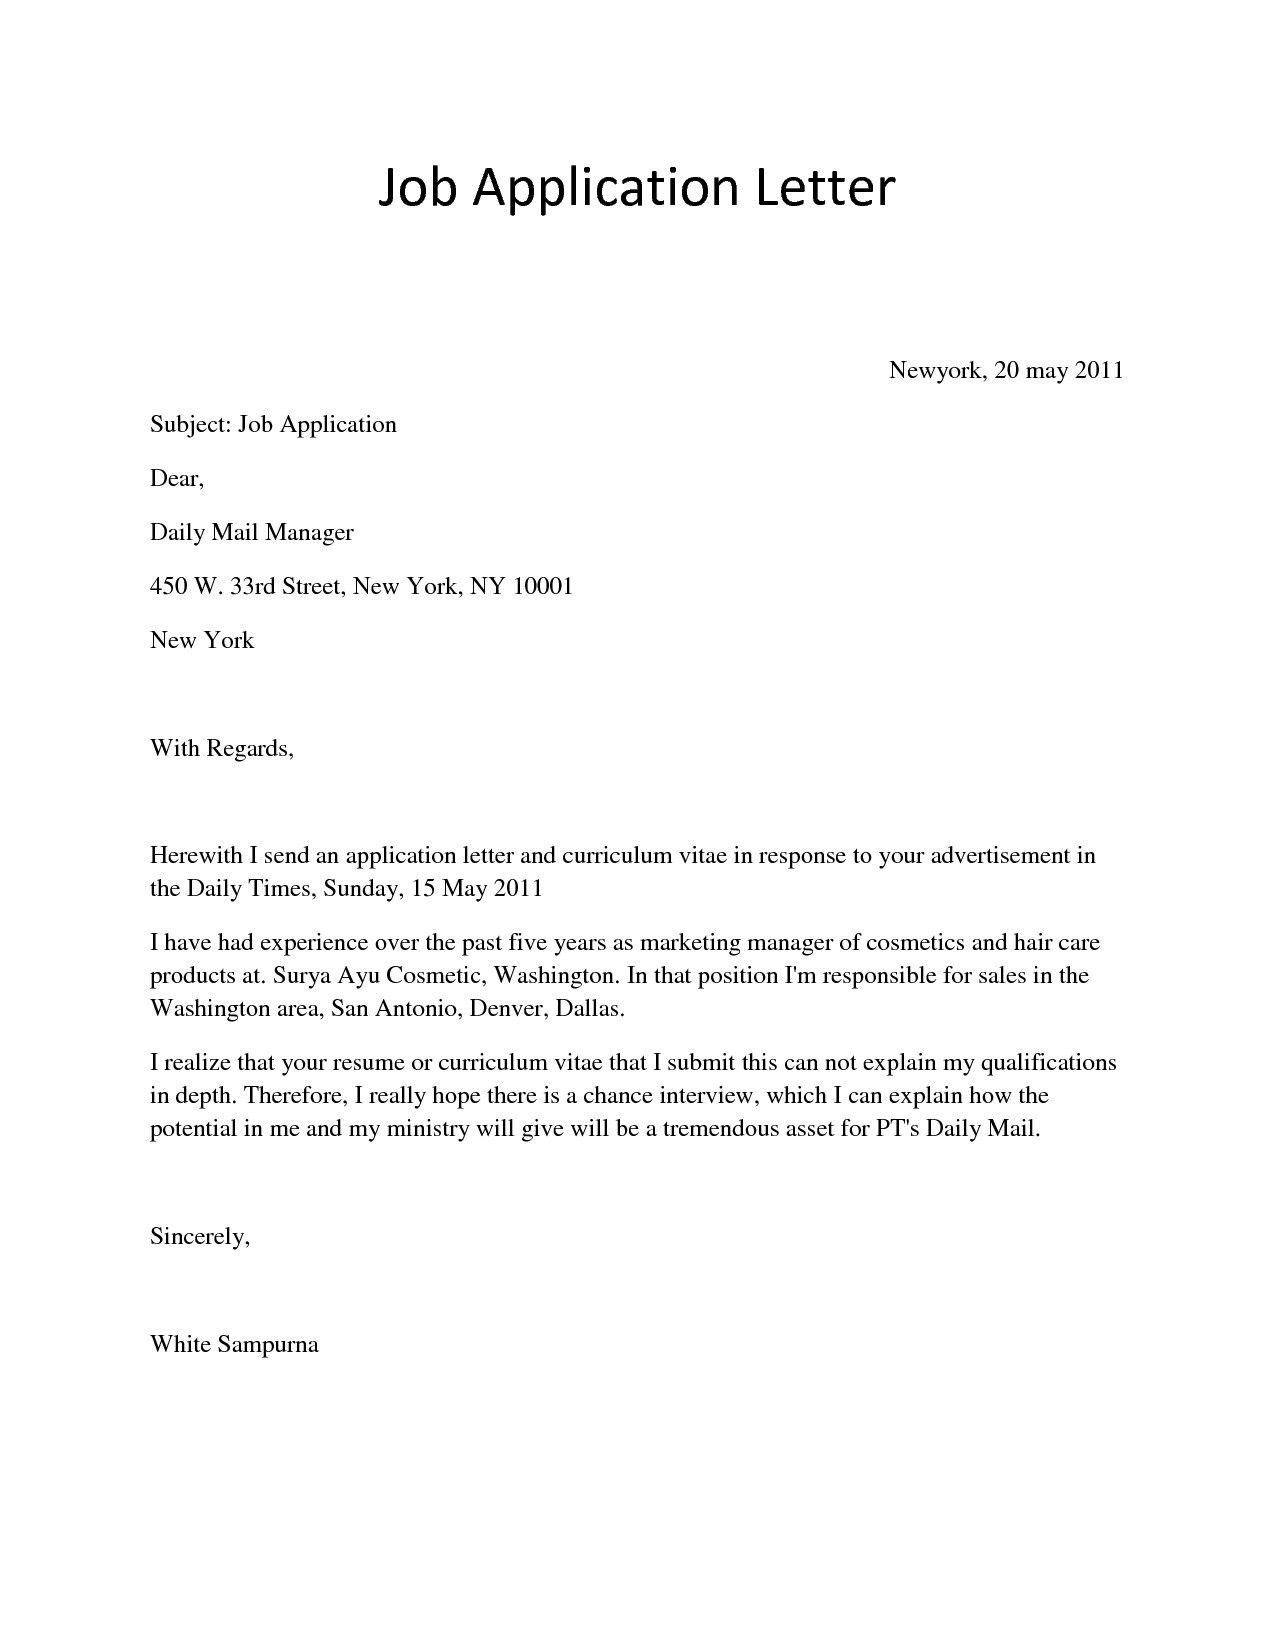 Job Applicant Simple Job Application Letter